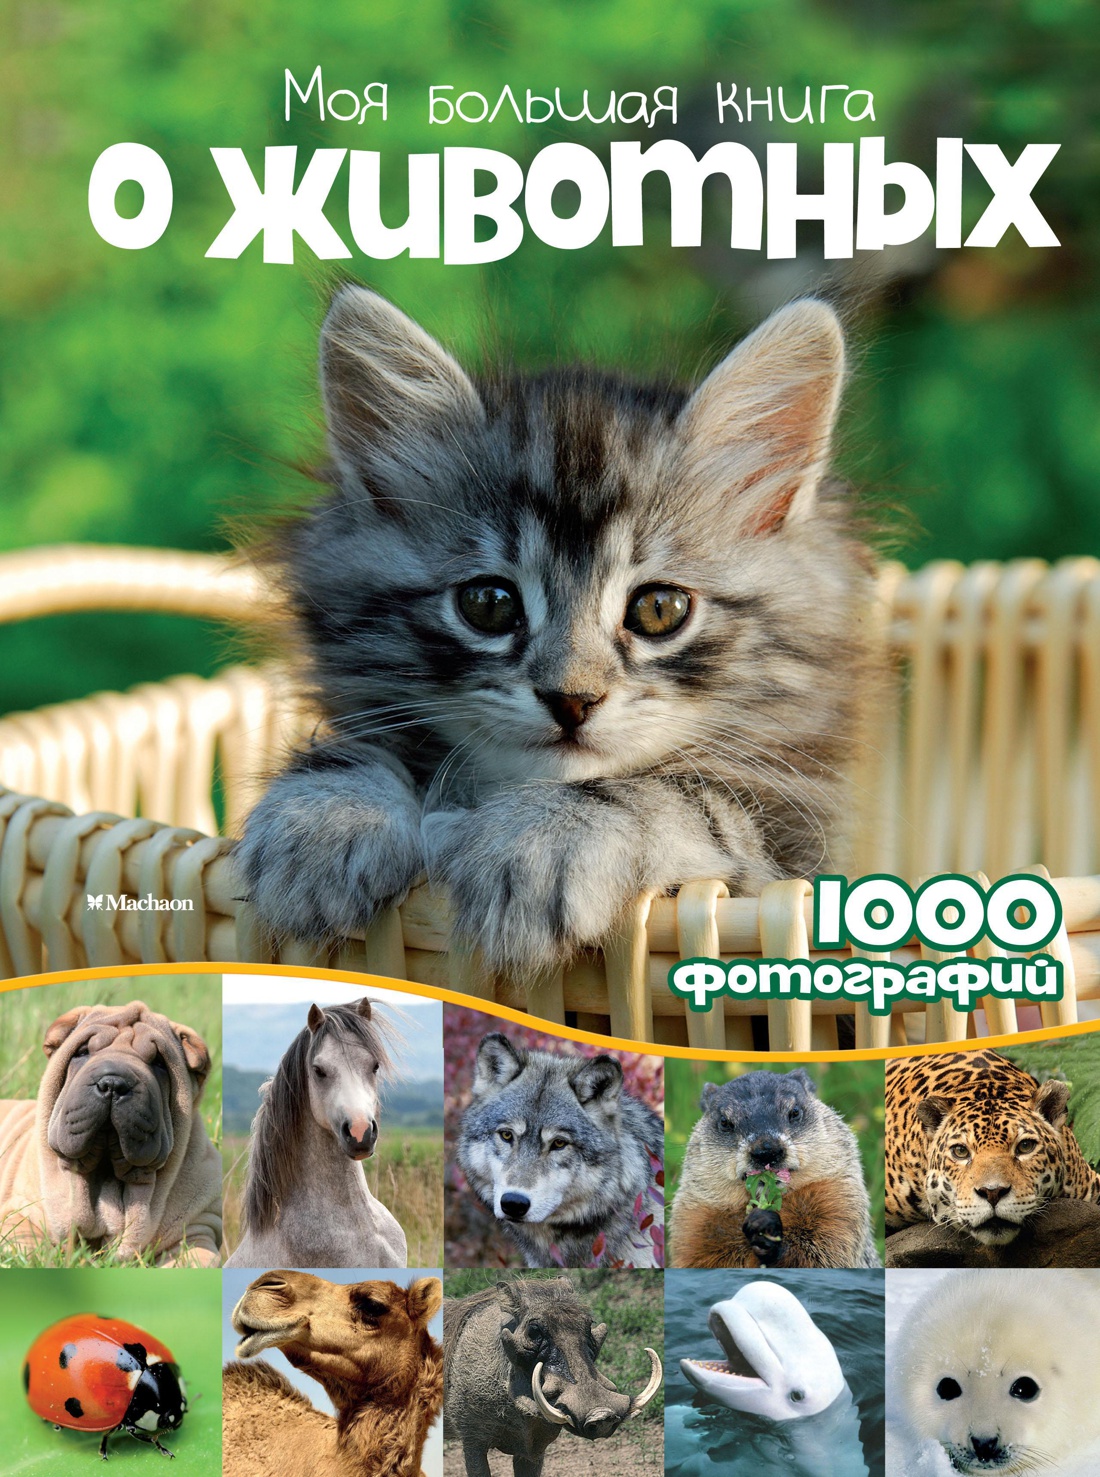 Бологова Валентина - Моя большая книга о животных. 1000 фотографий